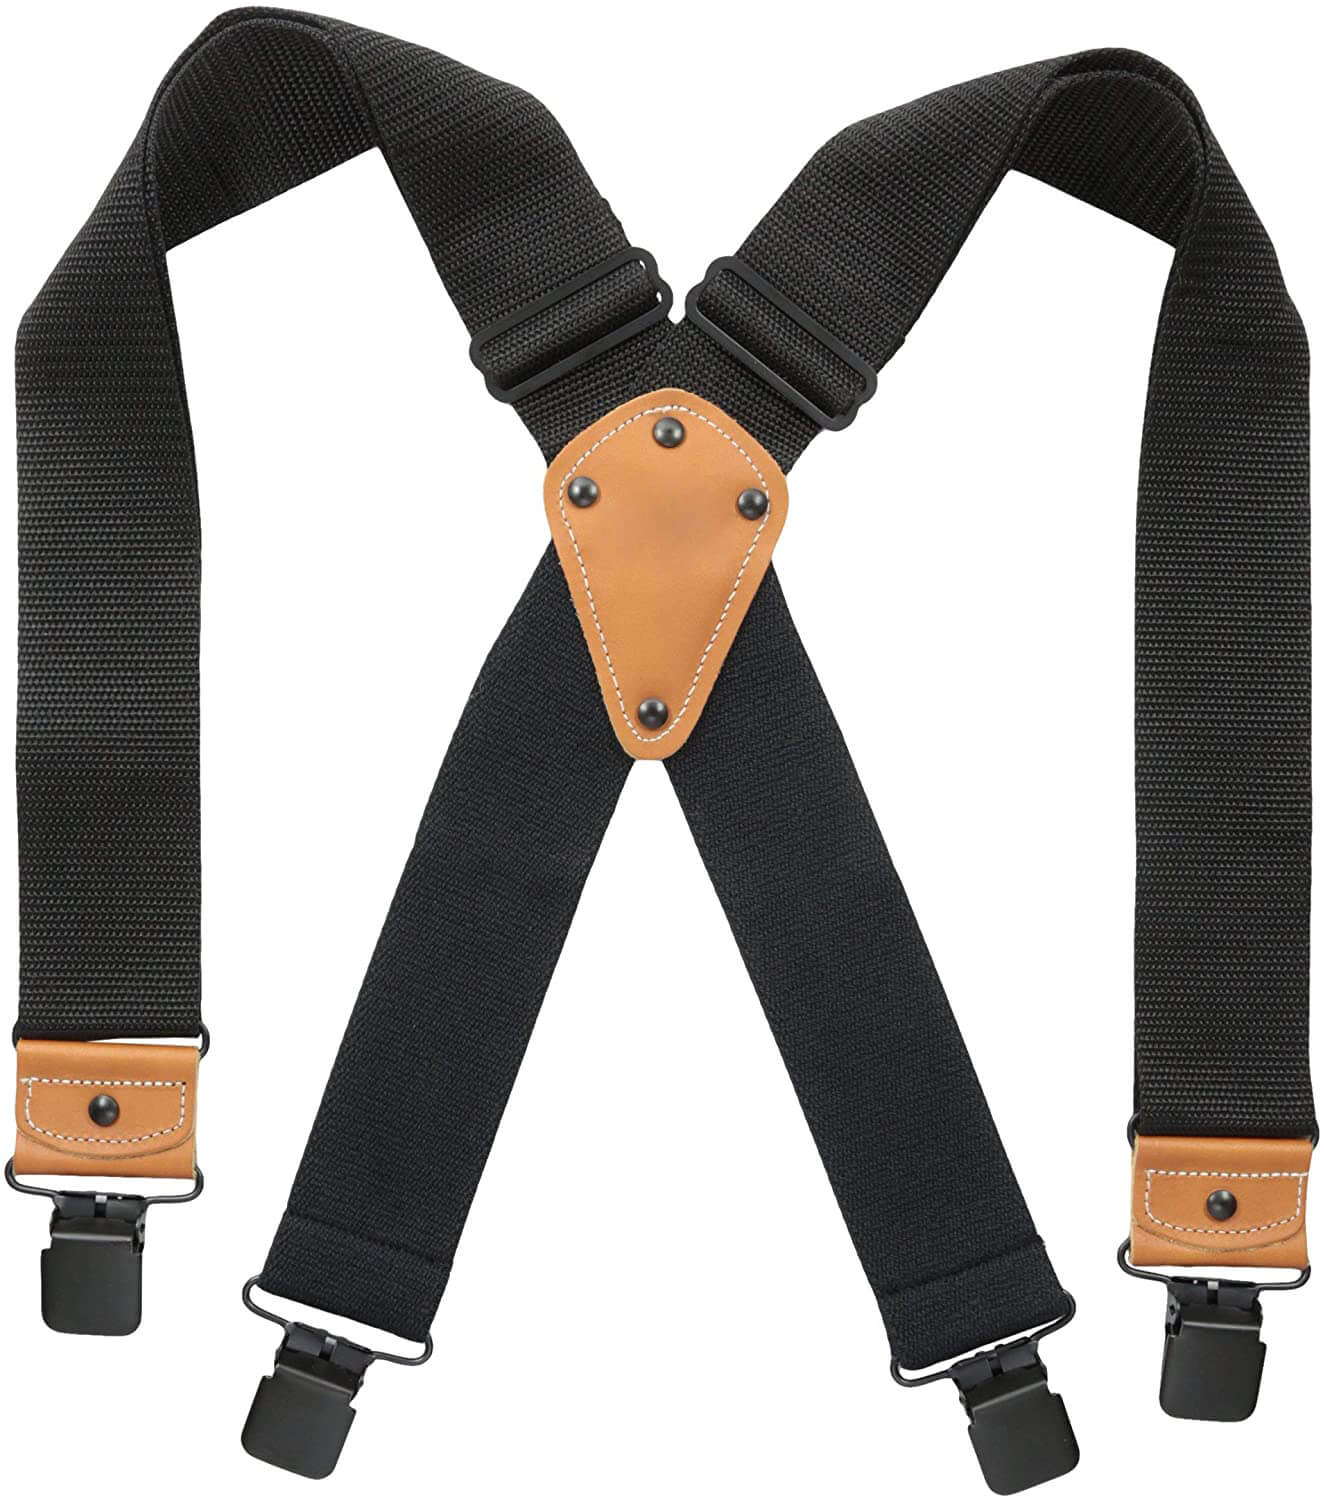 Men's Industrial Strength Suspenders